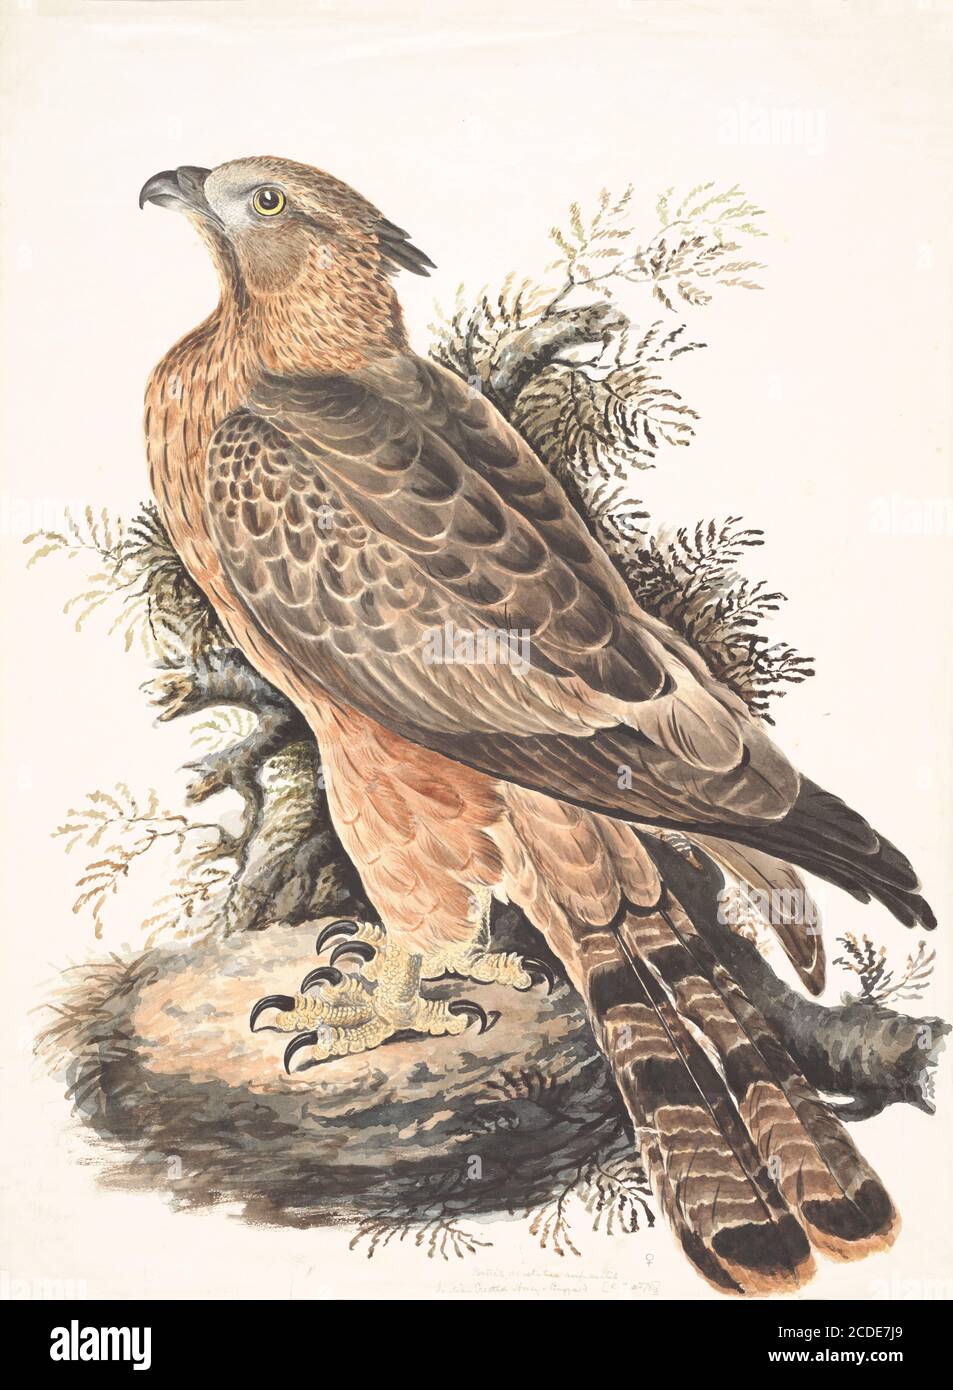 Der Haubenbussard (Pernis ptilorhynchus) ist ein Greifvogel in der Familie Accipitridae, zu der auch viele andere tagaktive Greifvögel wie Drachen, Adler und Harrier gehören. Diese Art ist auch als Orientalischer Honigbussard bekannt. Aquarellmalerei aus dem 18. Jahrhundert von Elizabeth Gwillim. Lady Elizabeth Symonds Gwillim (21. April 1763 – 21. Dezember 1807) war eine Künstlerin, die bis 1808 mit Sir Henry Gwillim, dem Puisne-Richter am Madras-Hofe, verheiratet war. Lady Gwillim malte eine Serie von etwa 200 Aquarellen von indischen Vögeln. Produziert etwa 20 Jahre vor John James Audubon, ihre Arbeit wurde acclai Stockfoto